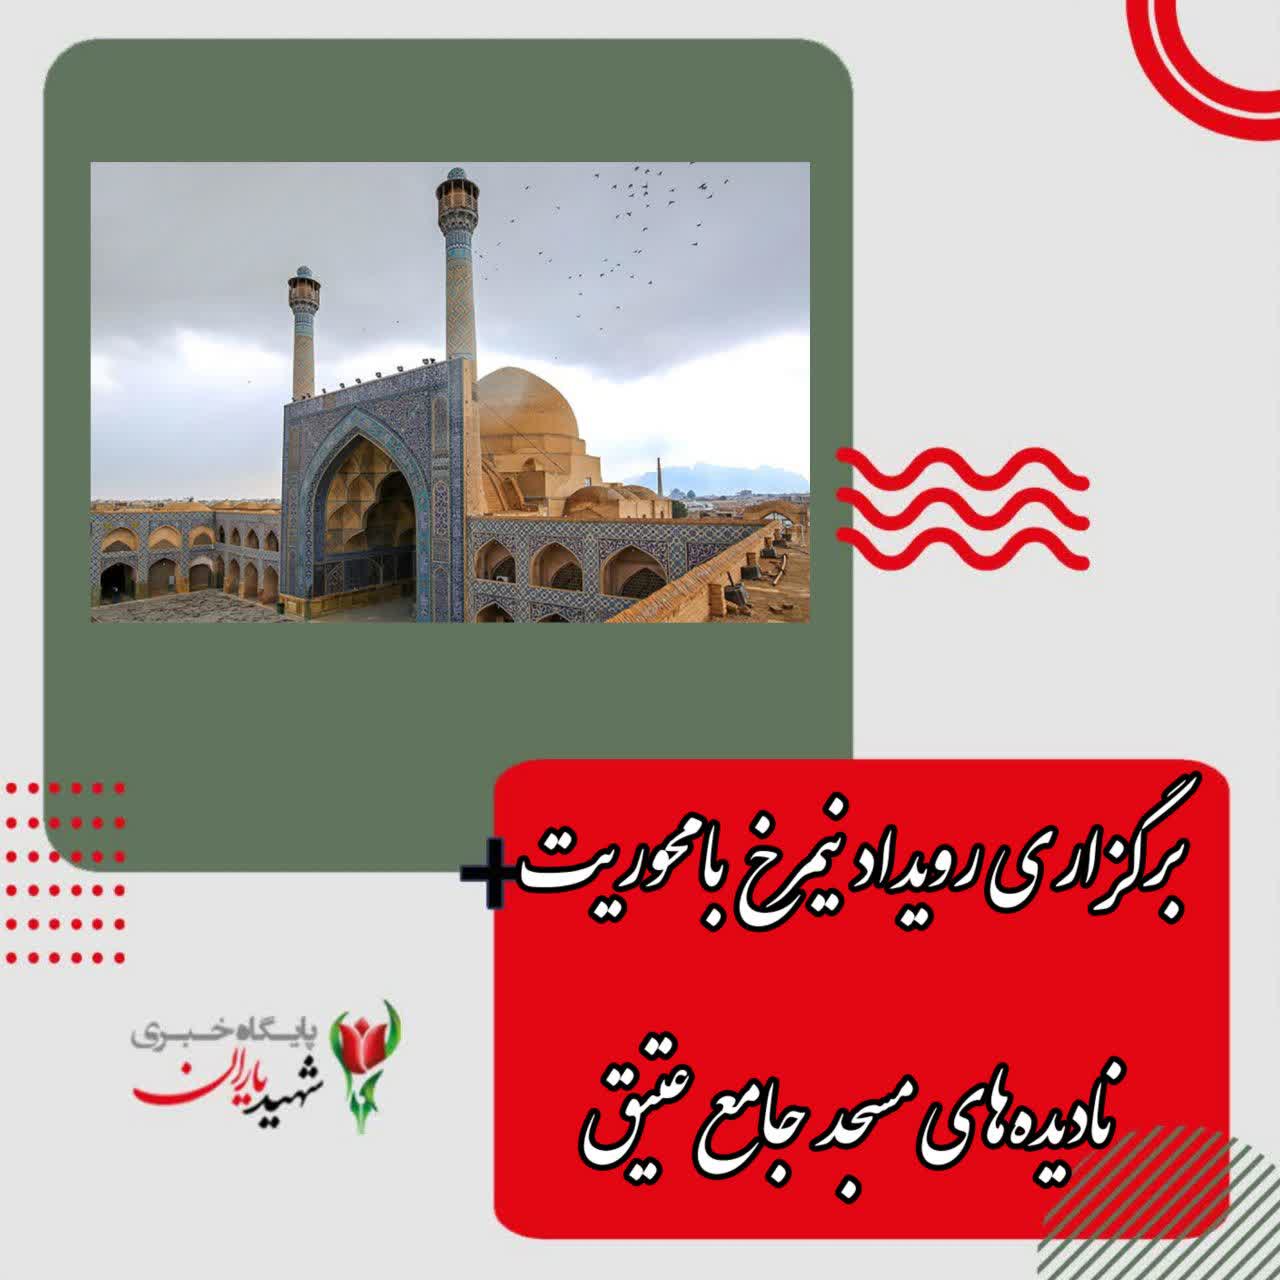 رئیس اداره گردشگری سازمان فرهنگی اجتماعی ورزشی شهرداری اصفهان خبر داد: